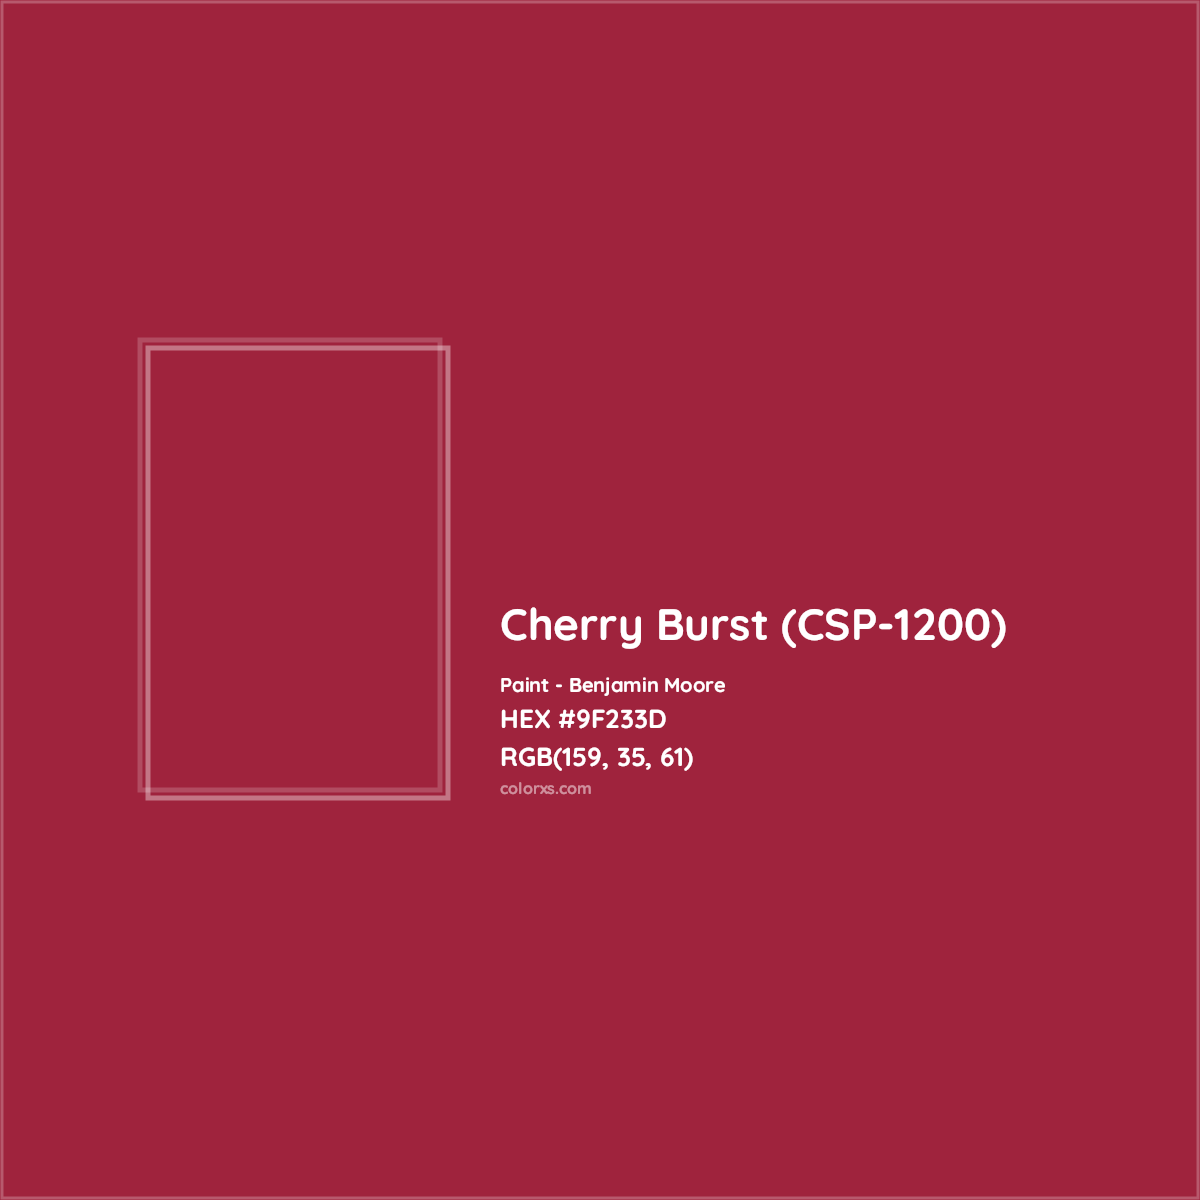 HEX #9F233D Cherry Burst (CSP-1200) Paint Benjamin Moore - Color Code